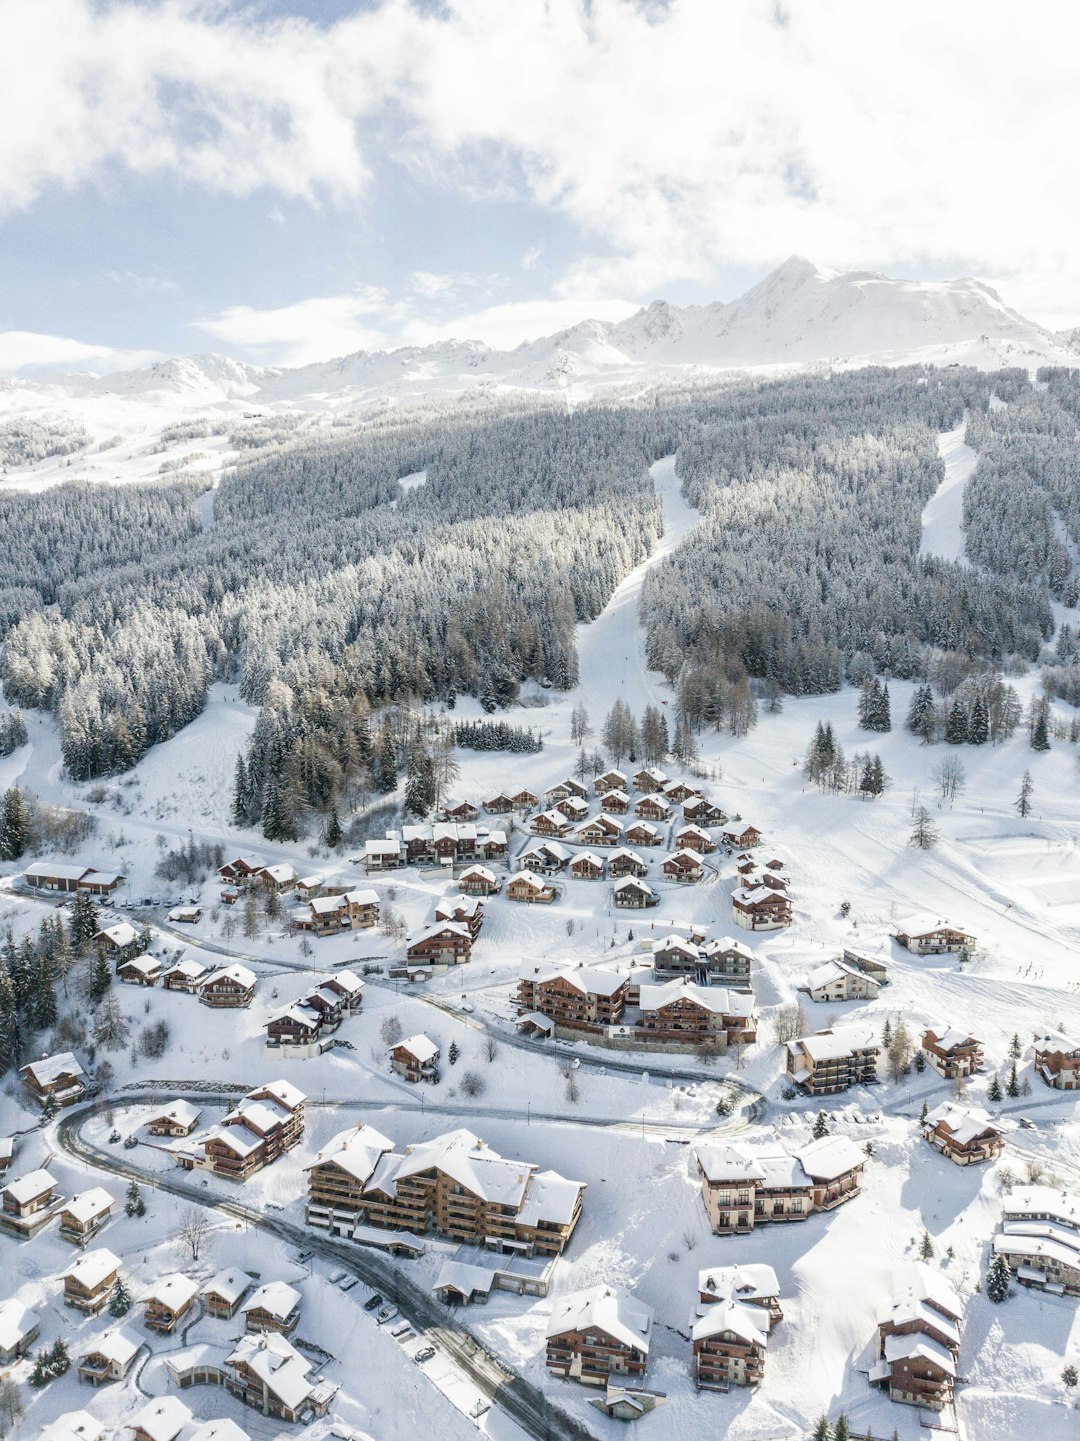 Ski resort photo spot Peisey-Nancroix Mont-de-Lans